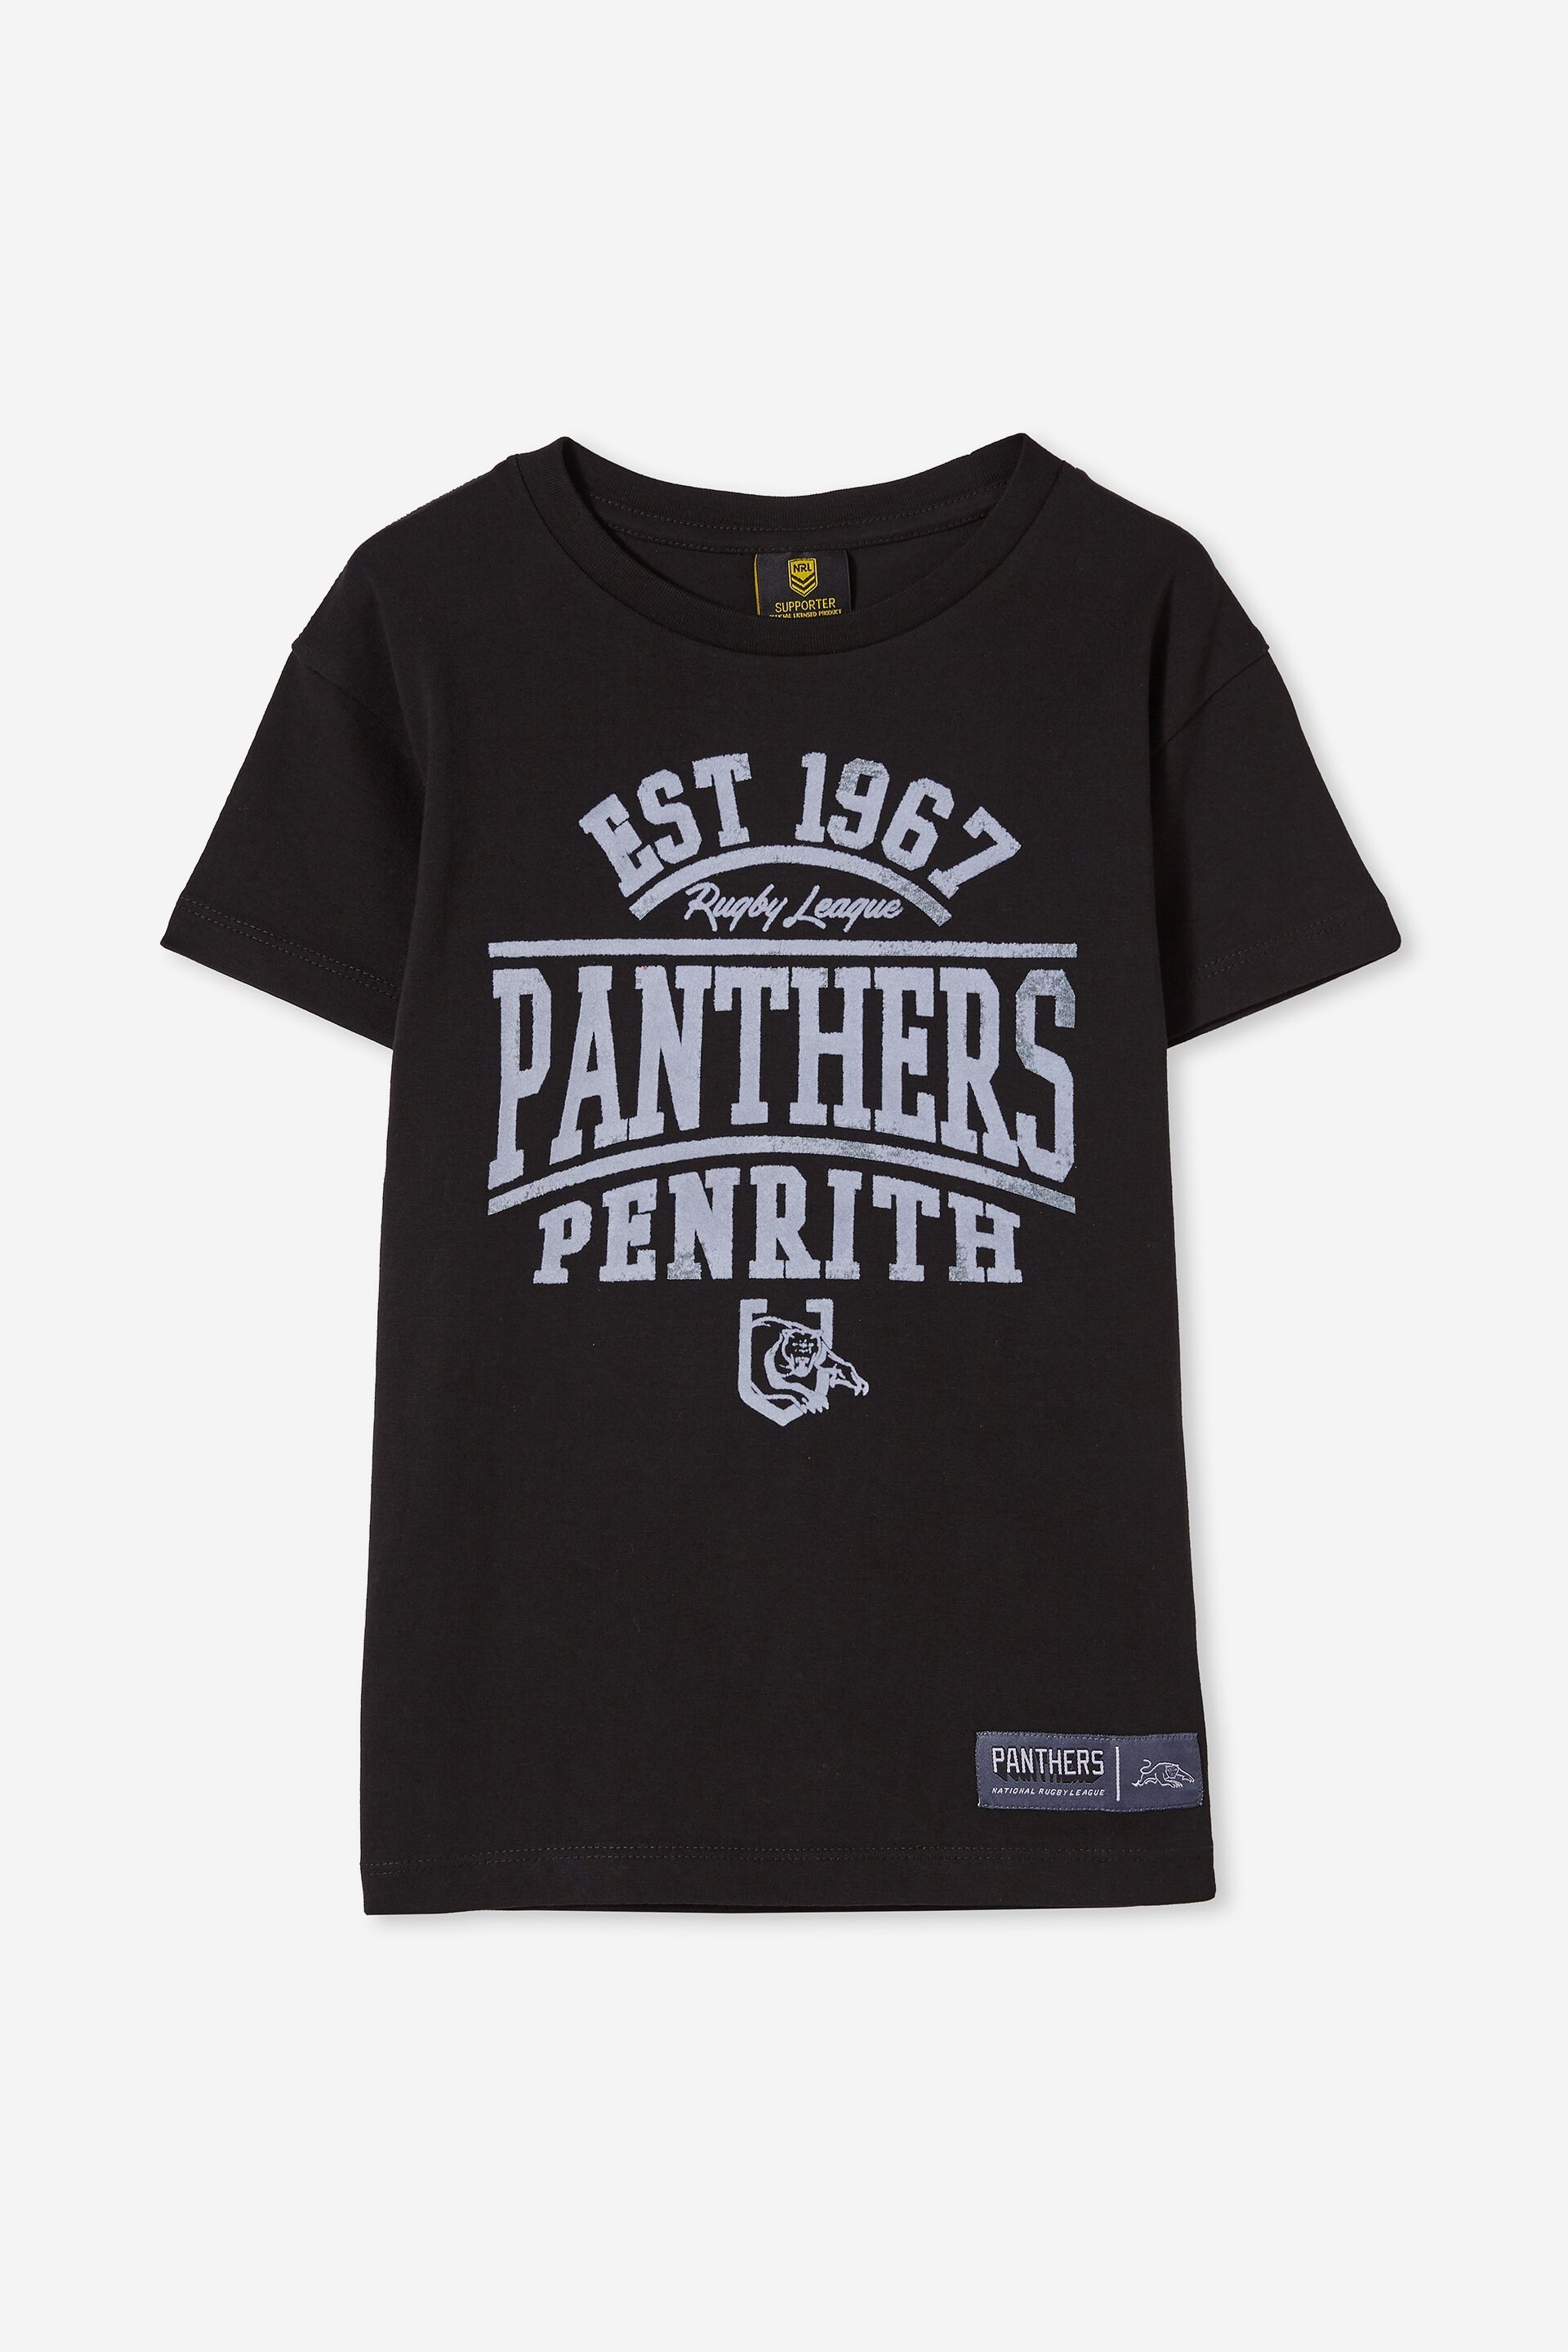 Penrith Panthers NRL 2021 Cotton On Raglan LS Top Kids Sizes 1yrs-10yrs! 